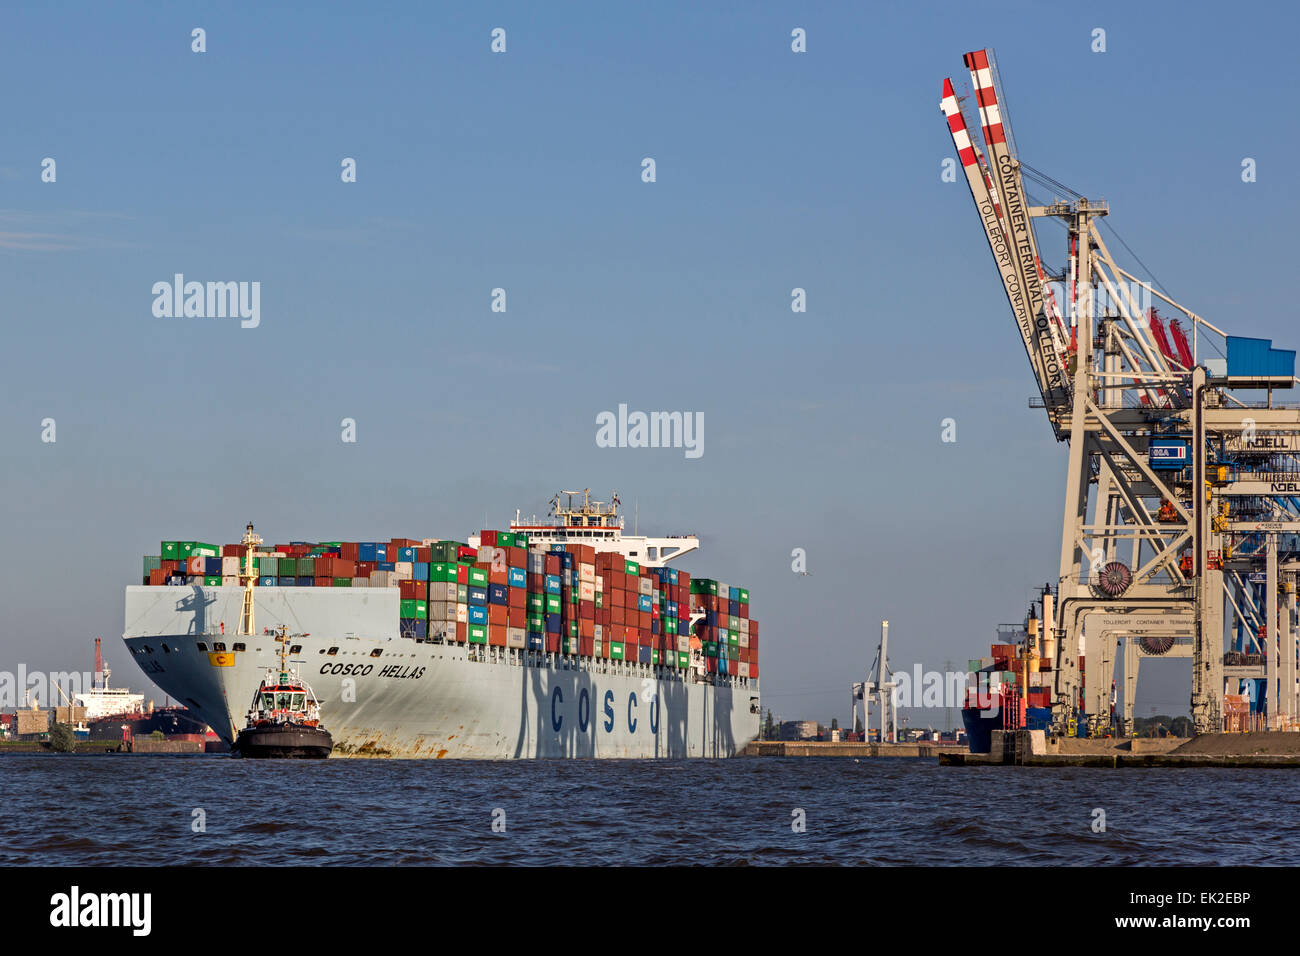 Containerschiff Cosco Hellas wird von Schlepper gezogen, Hamburger Hafen, Hamburg, Deutschland, Europa / Containership Cosco Hel Stock Photo